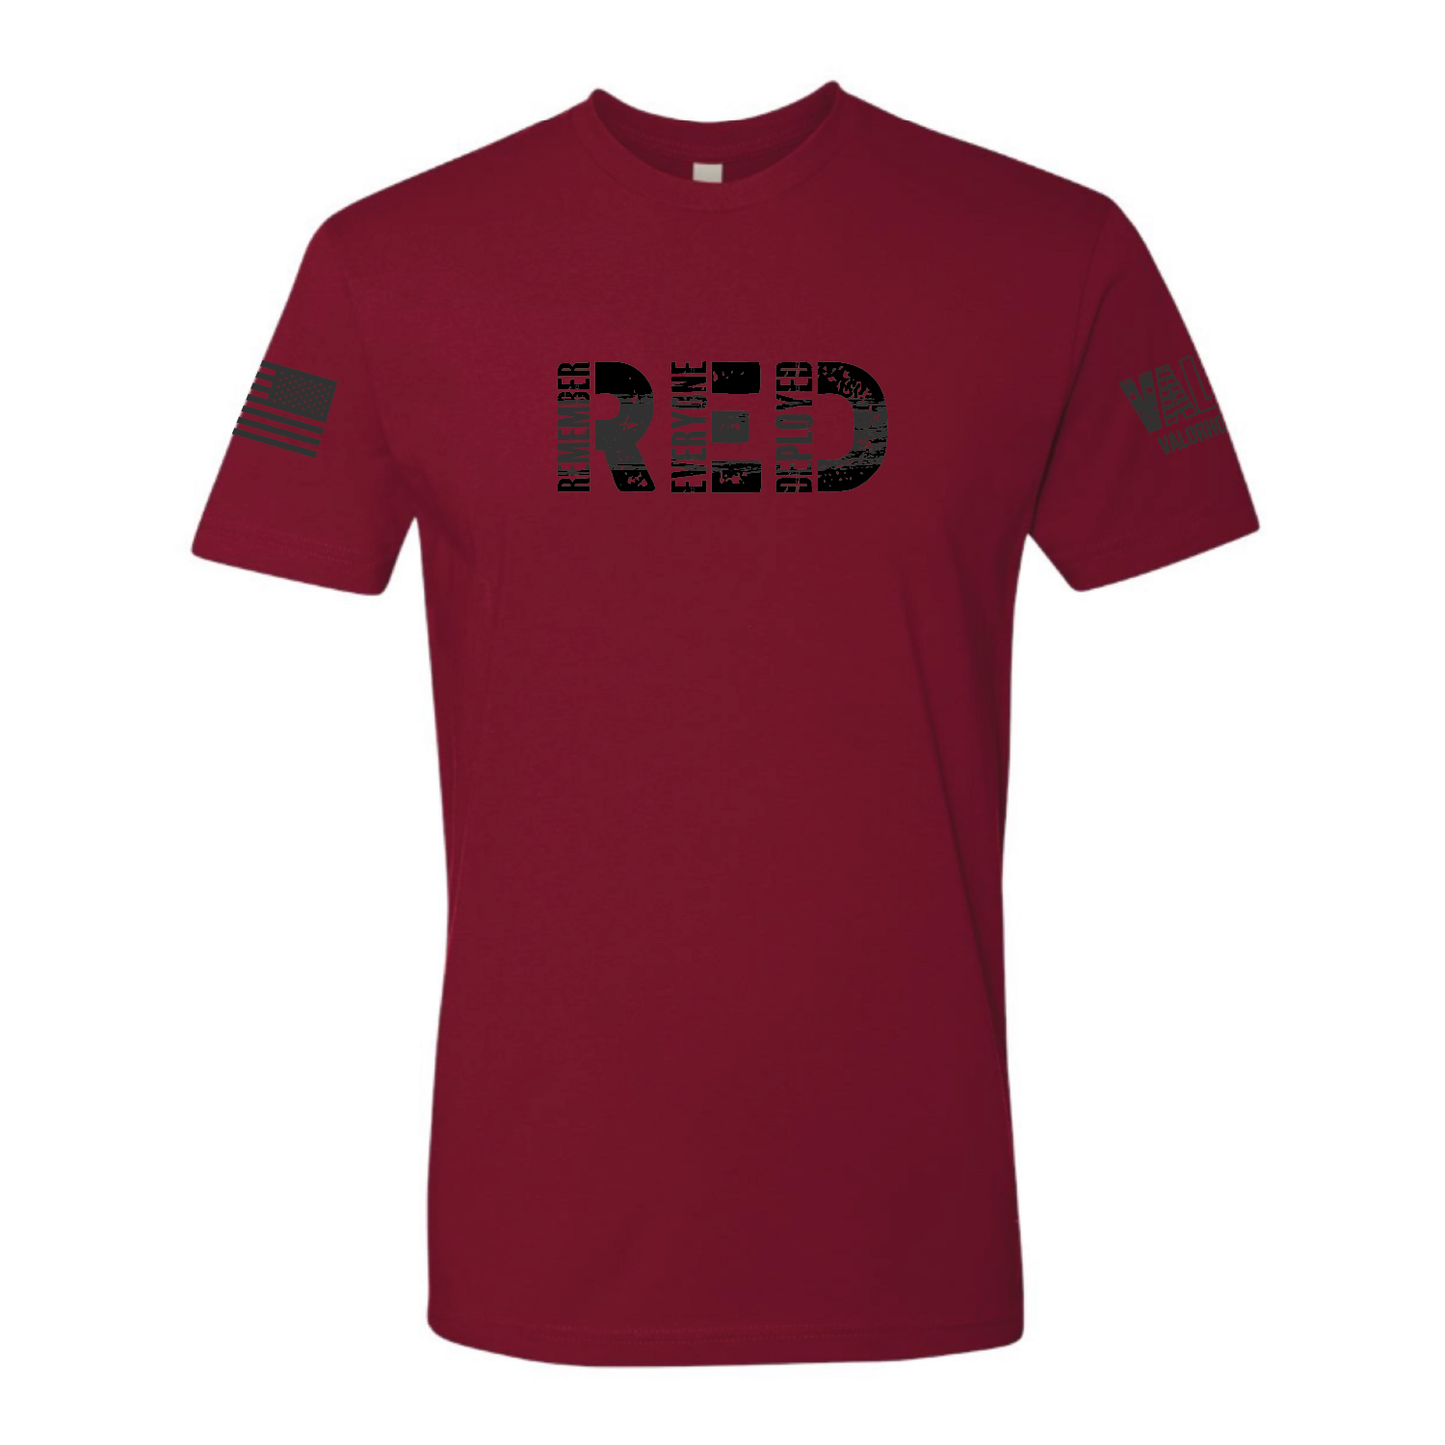 Gentlemen's "R.E.D. Friday v1.0" Shirt